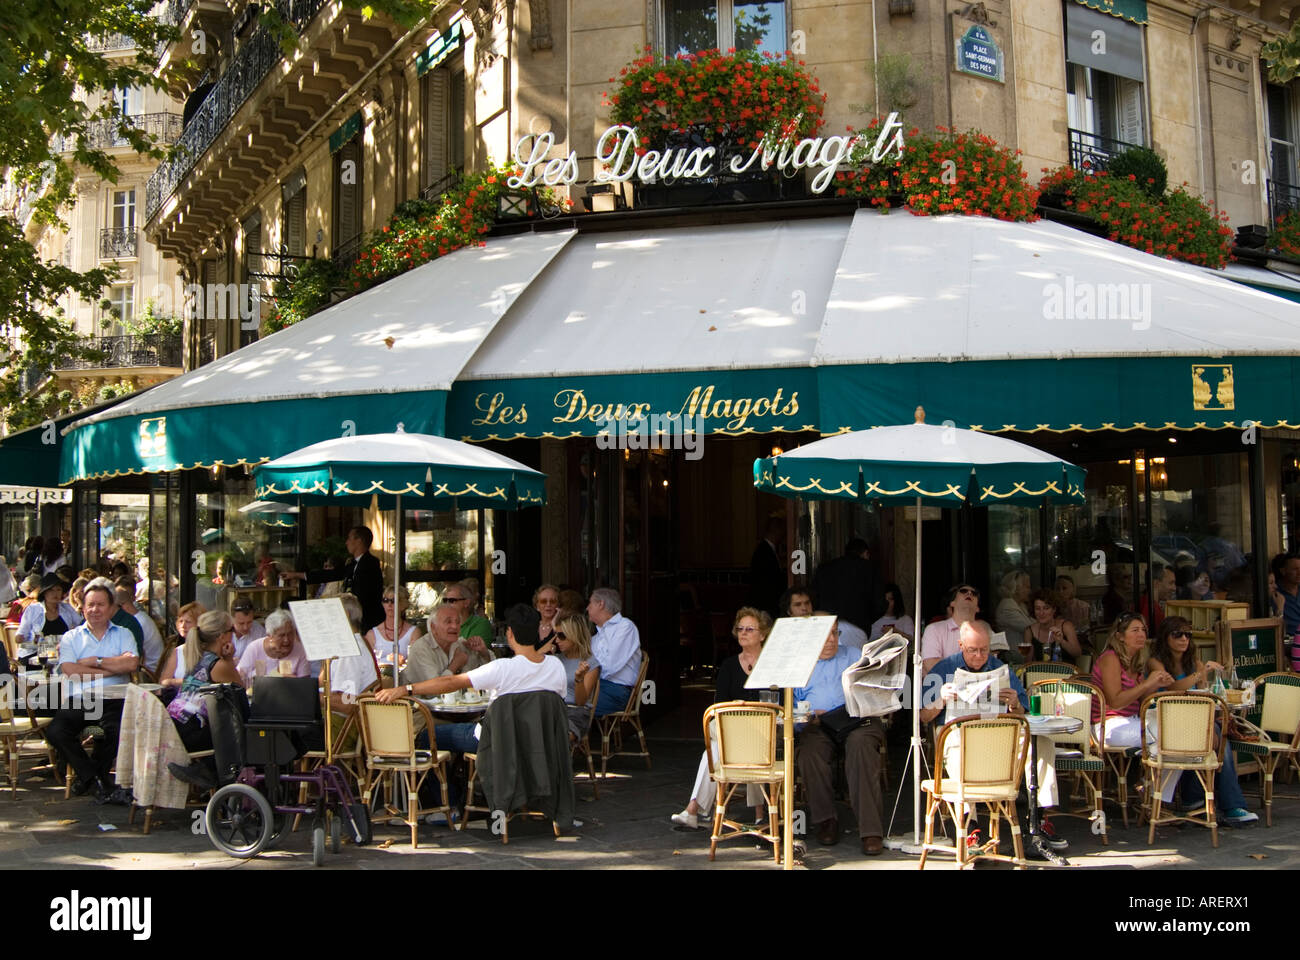 Les Deux Magots cafe in Saint Germain des Pres, Paris France Stock Photo